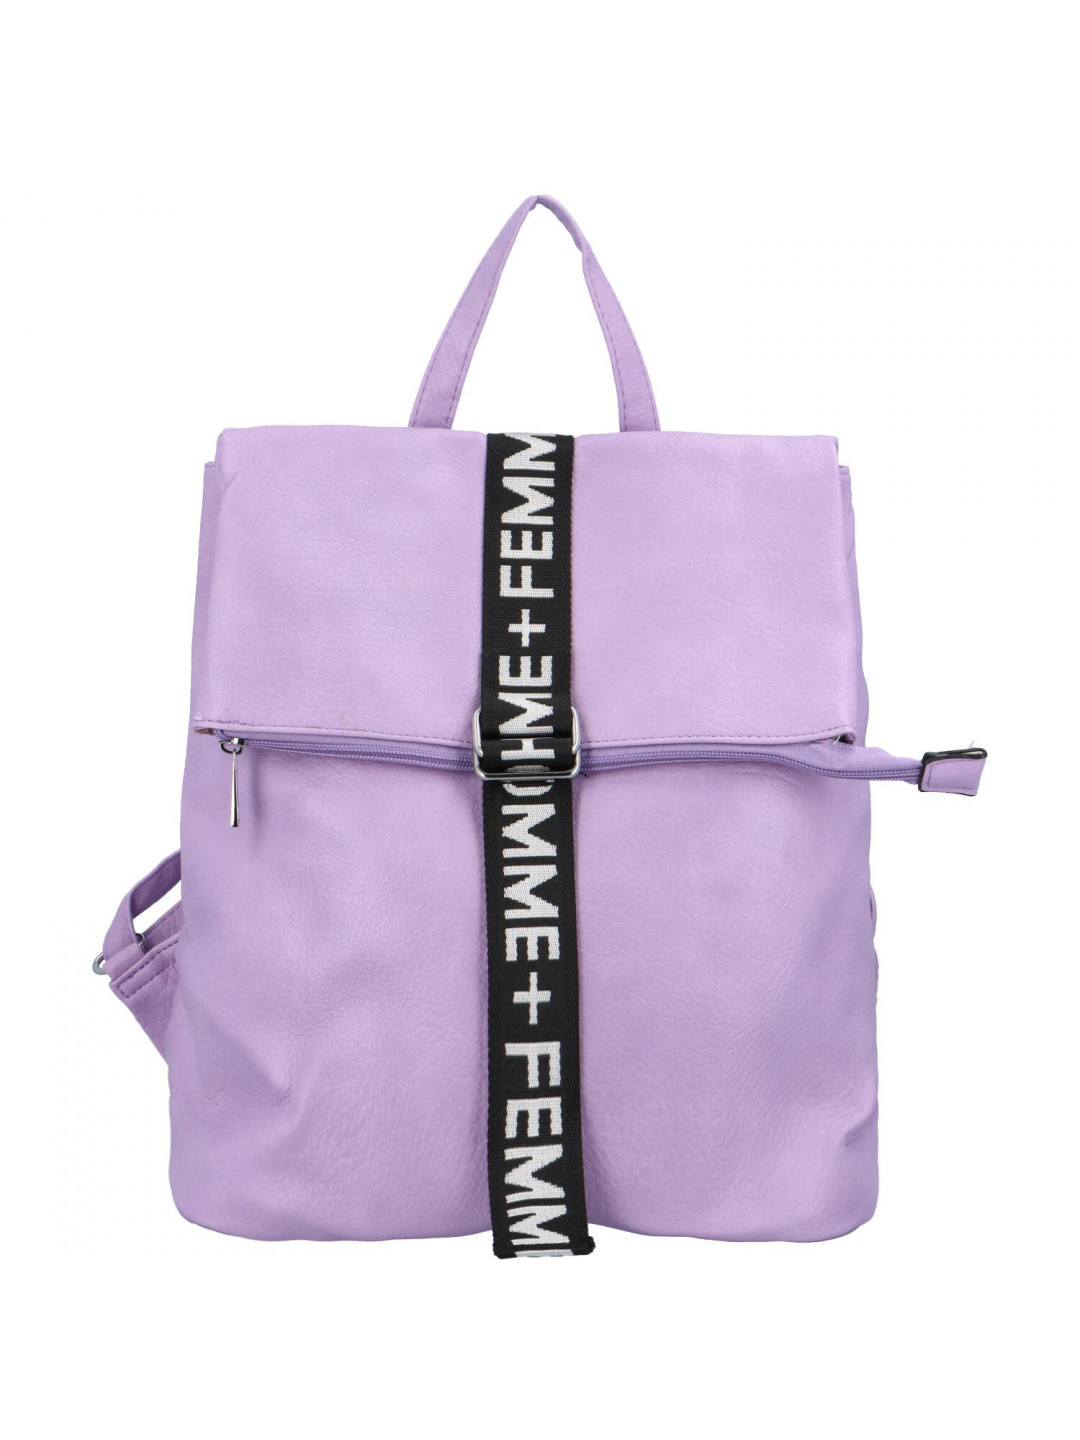 Trendový dámský koženkový batoh Pelias pastelově fialová